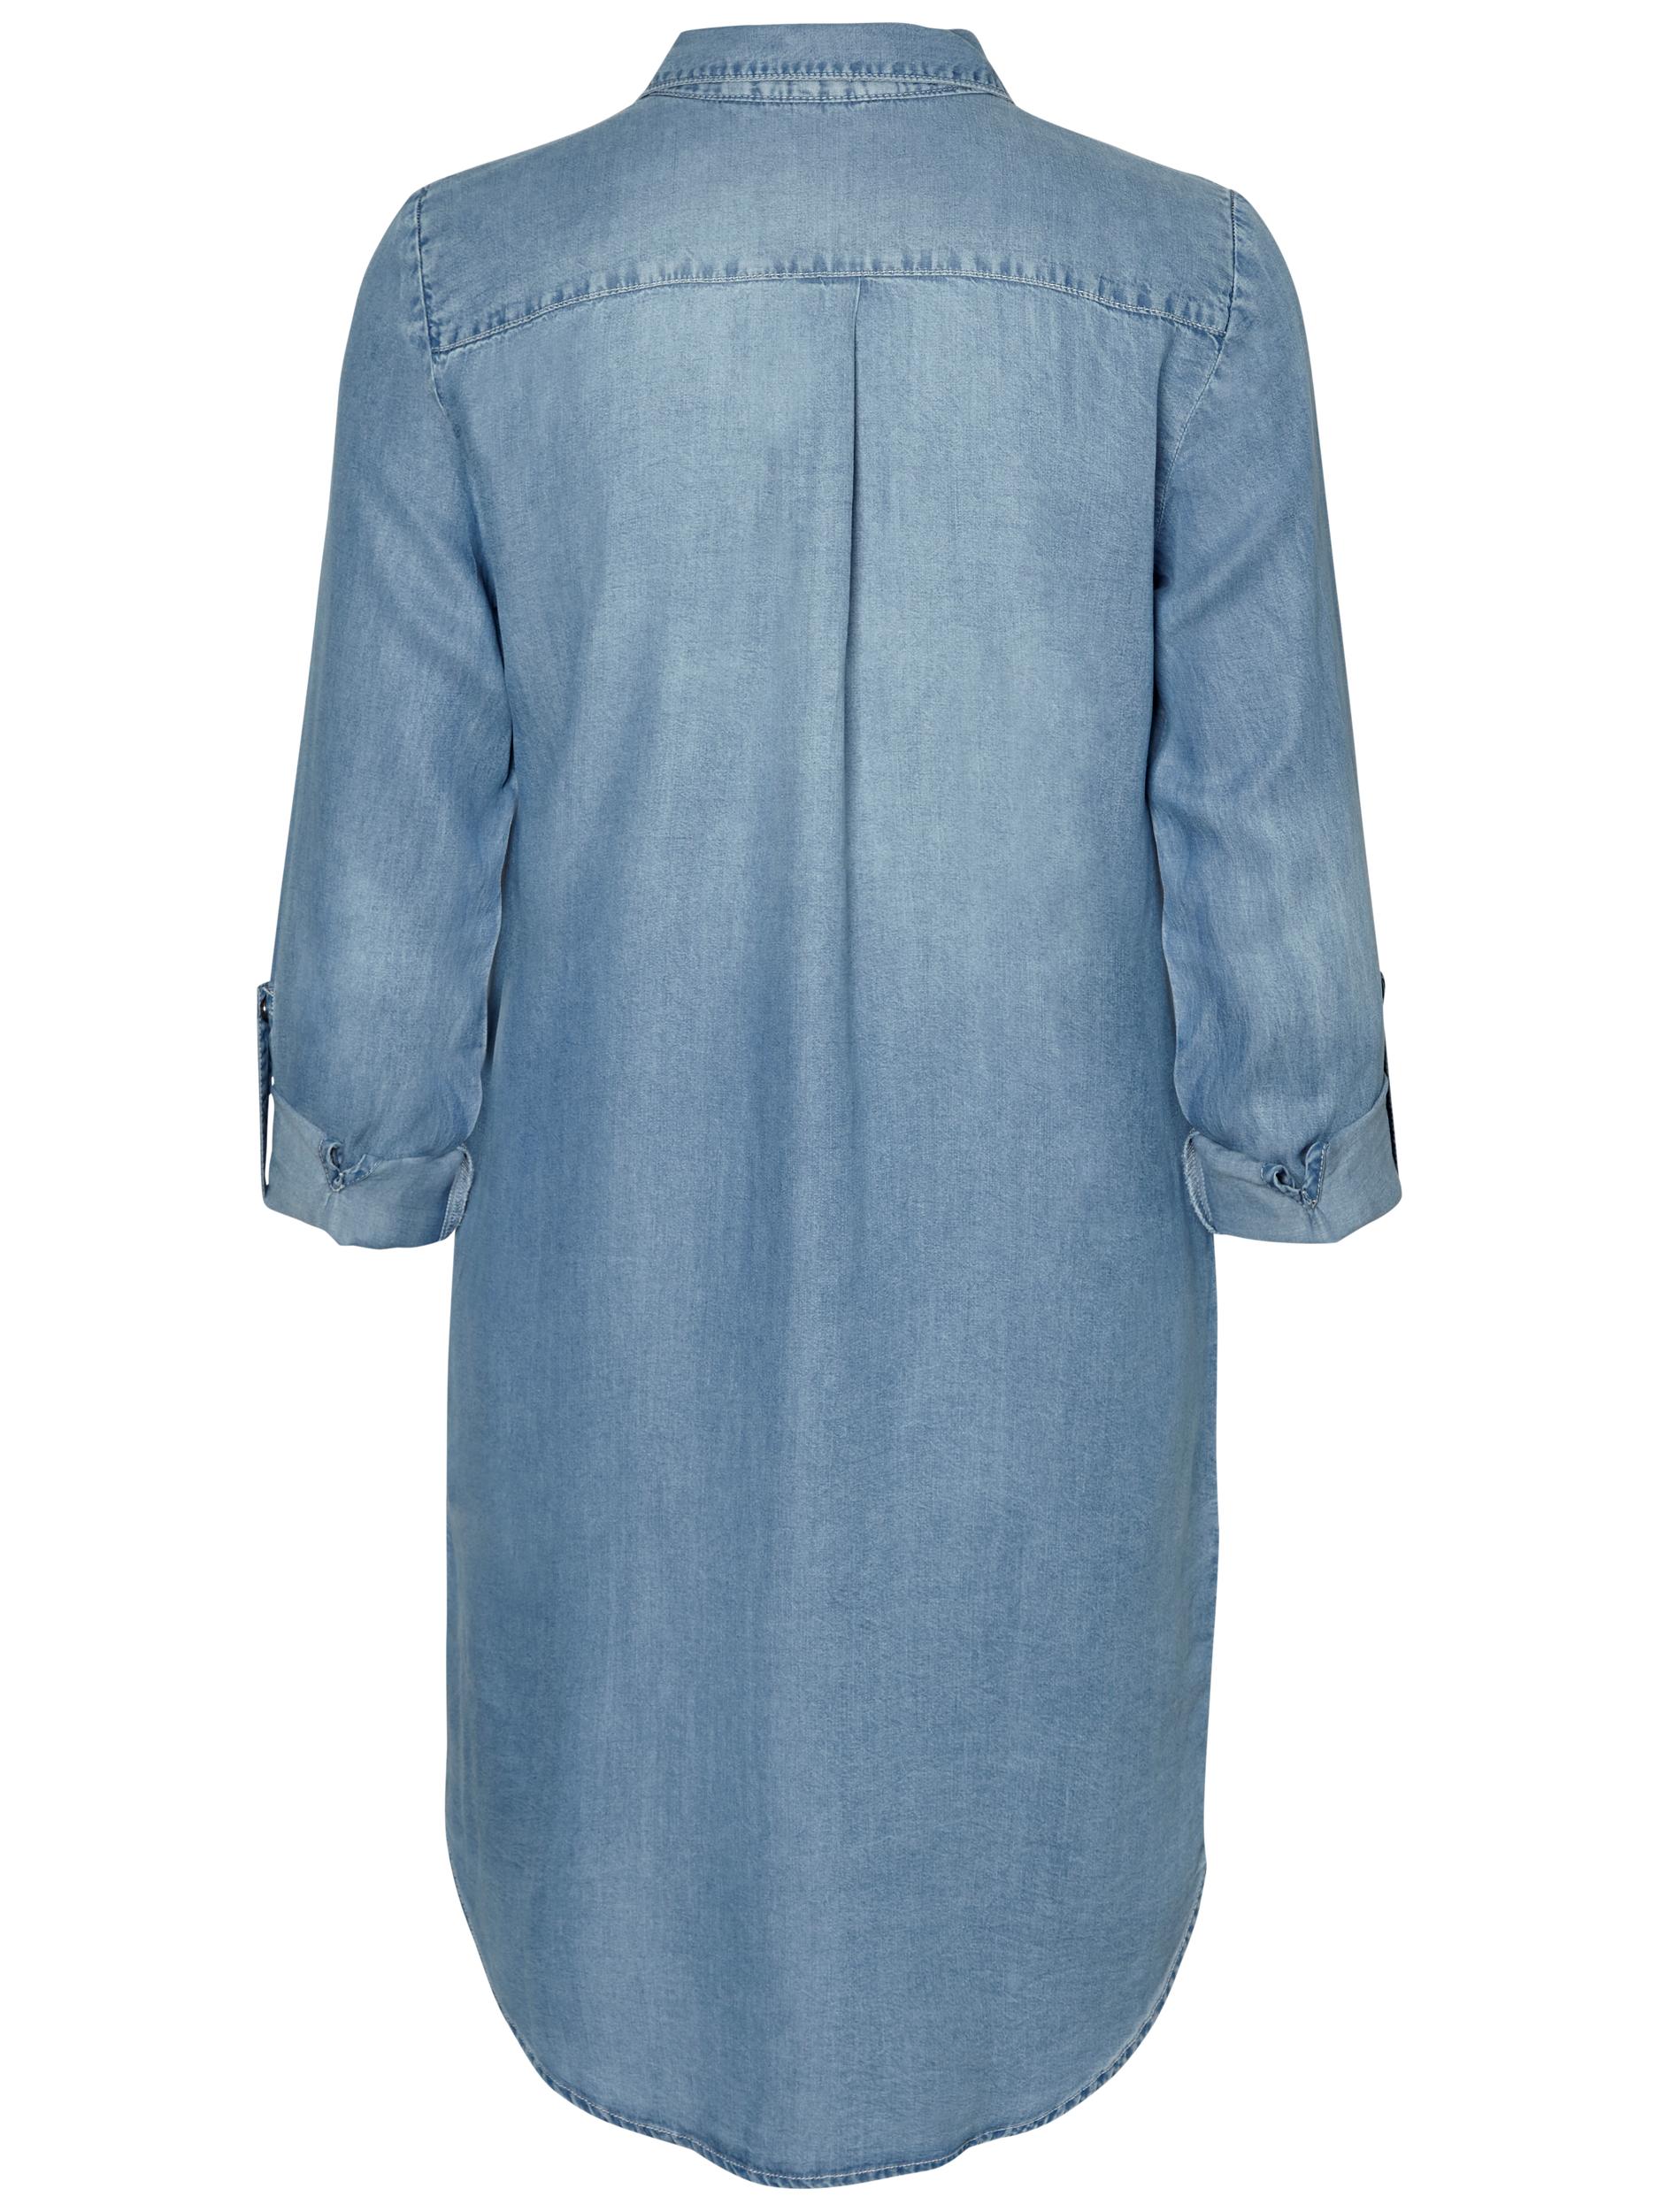 Odzież Kobiety VERO MODA Sukienka koszulowa Silla w kolorze Niebieskim 